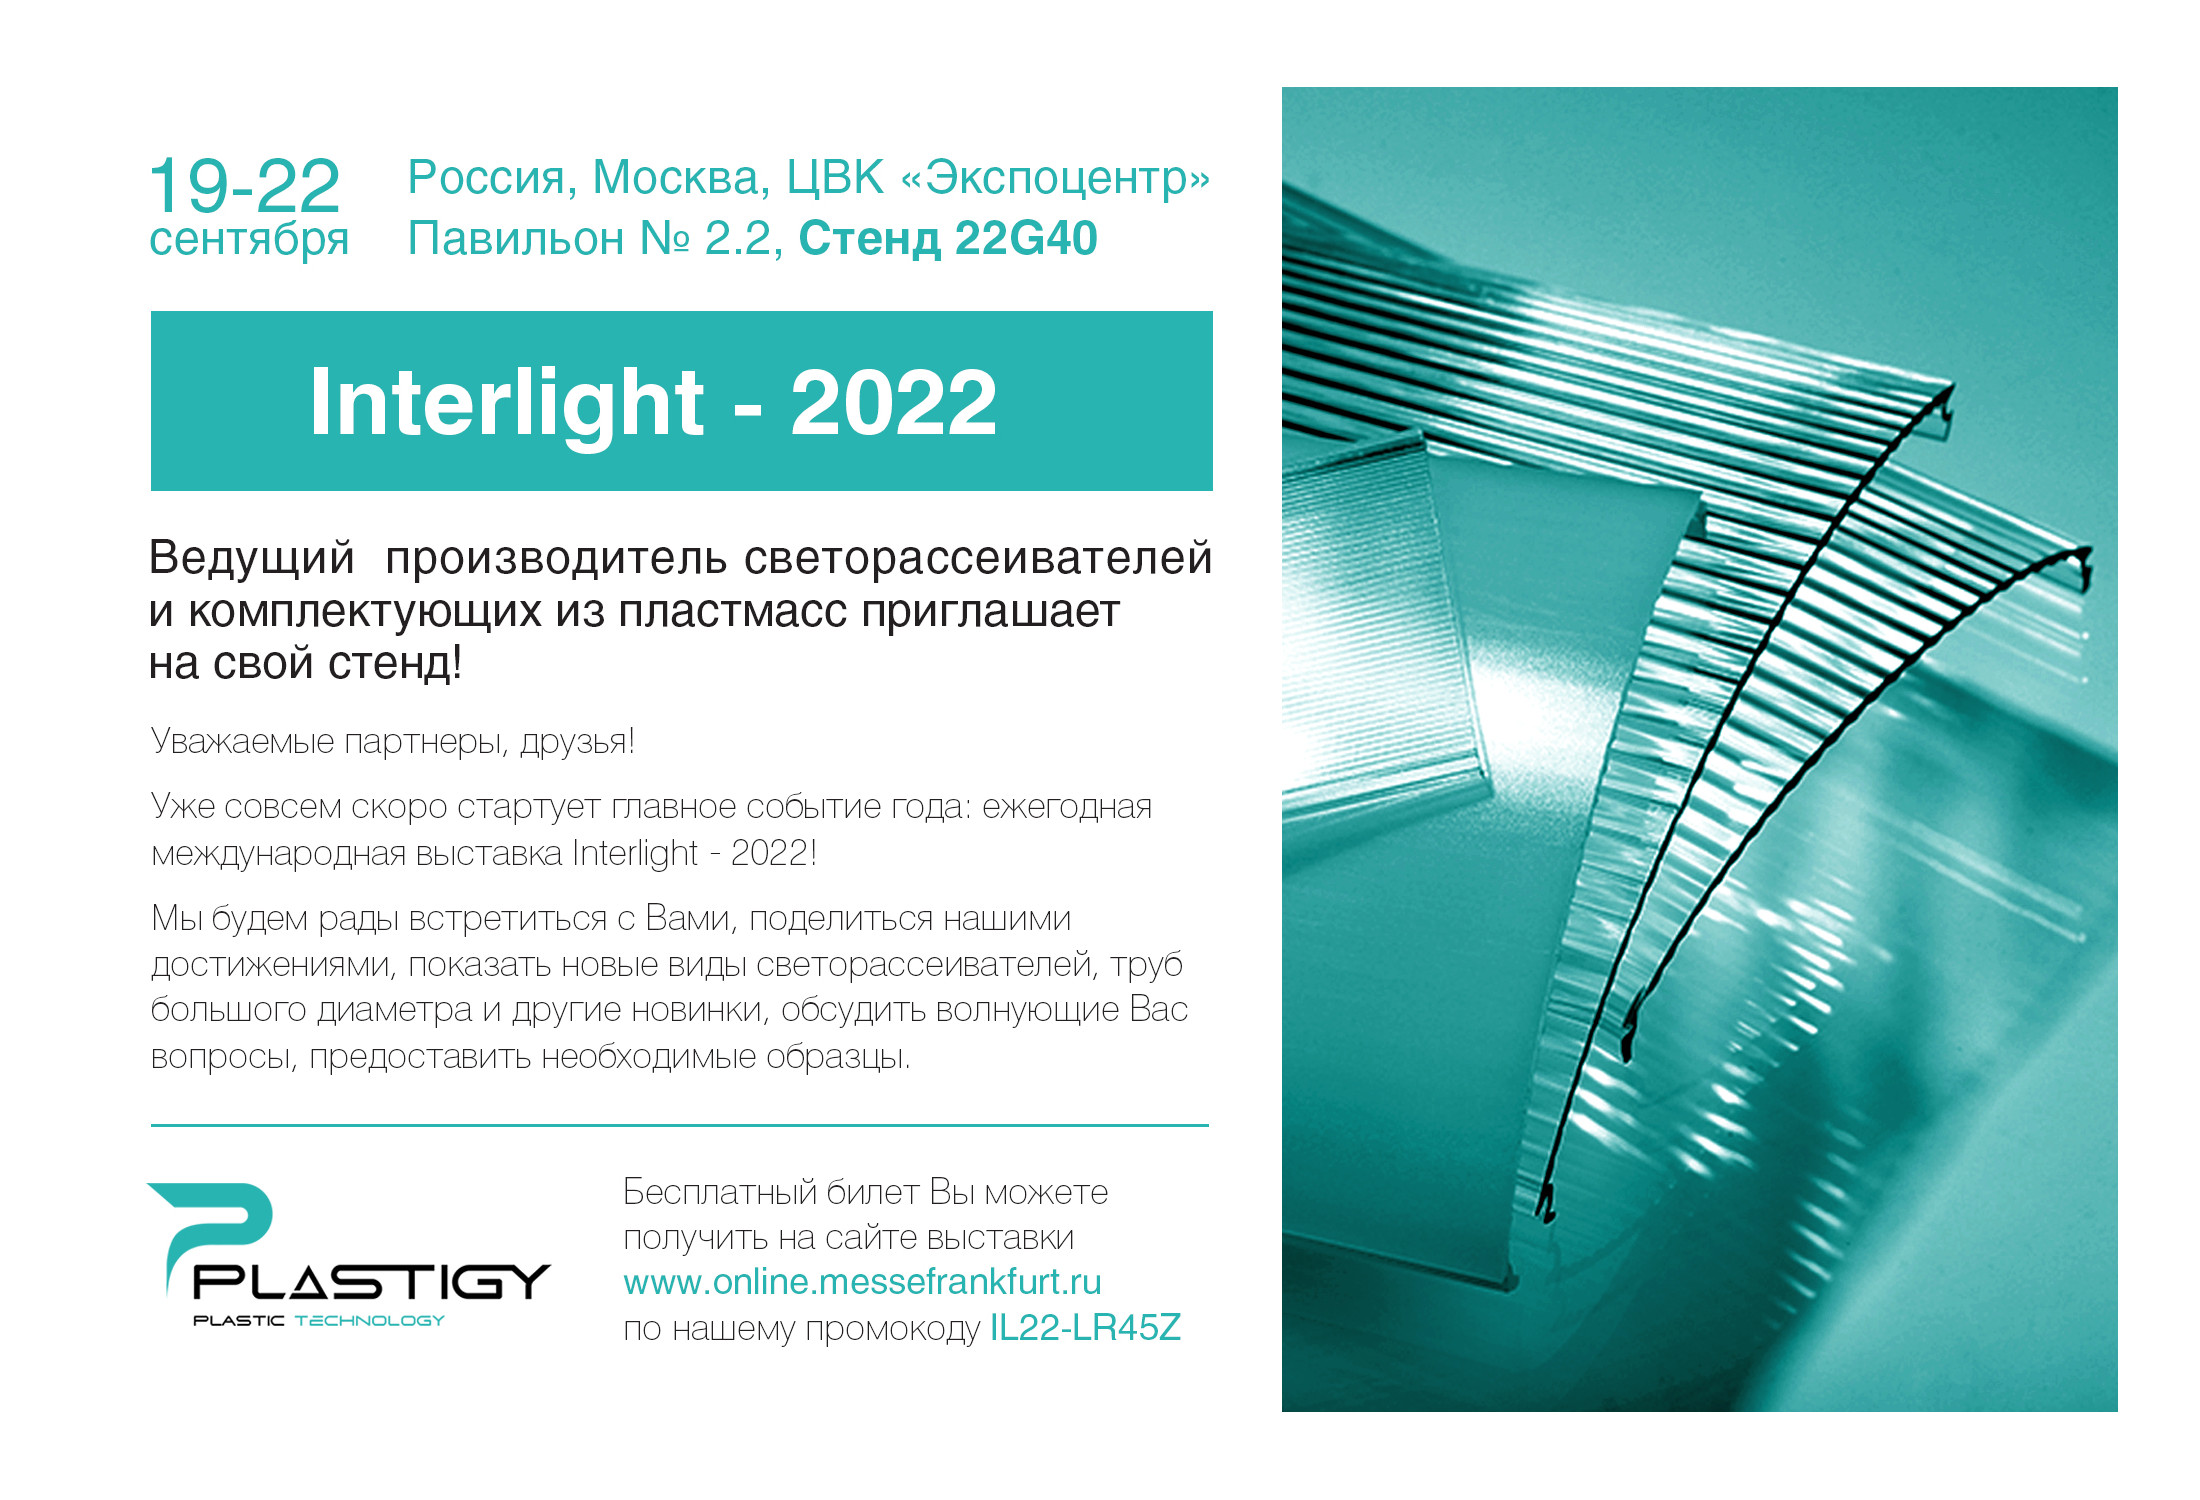 Приглашаем на наш стенд на выставке Interlight-2022!